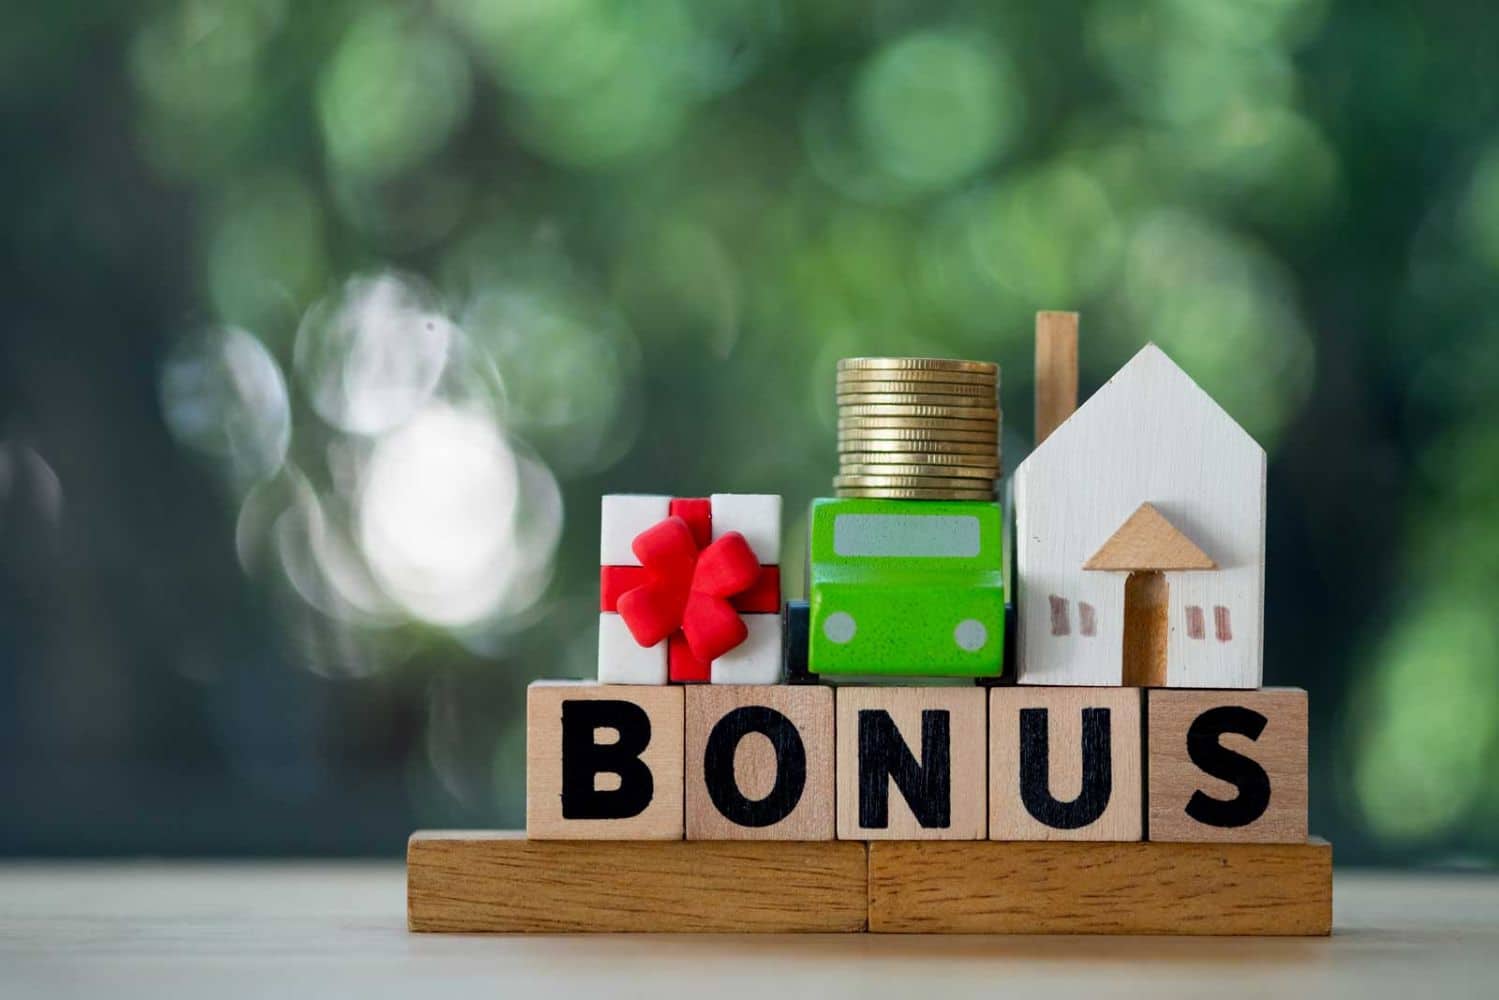 Bonus prima casa under 36: come funziona per il mutuo al 100%? Requisiti e banche aderenti